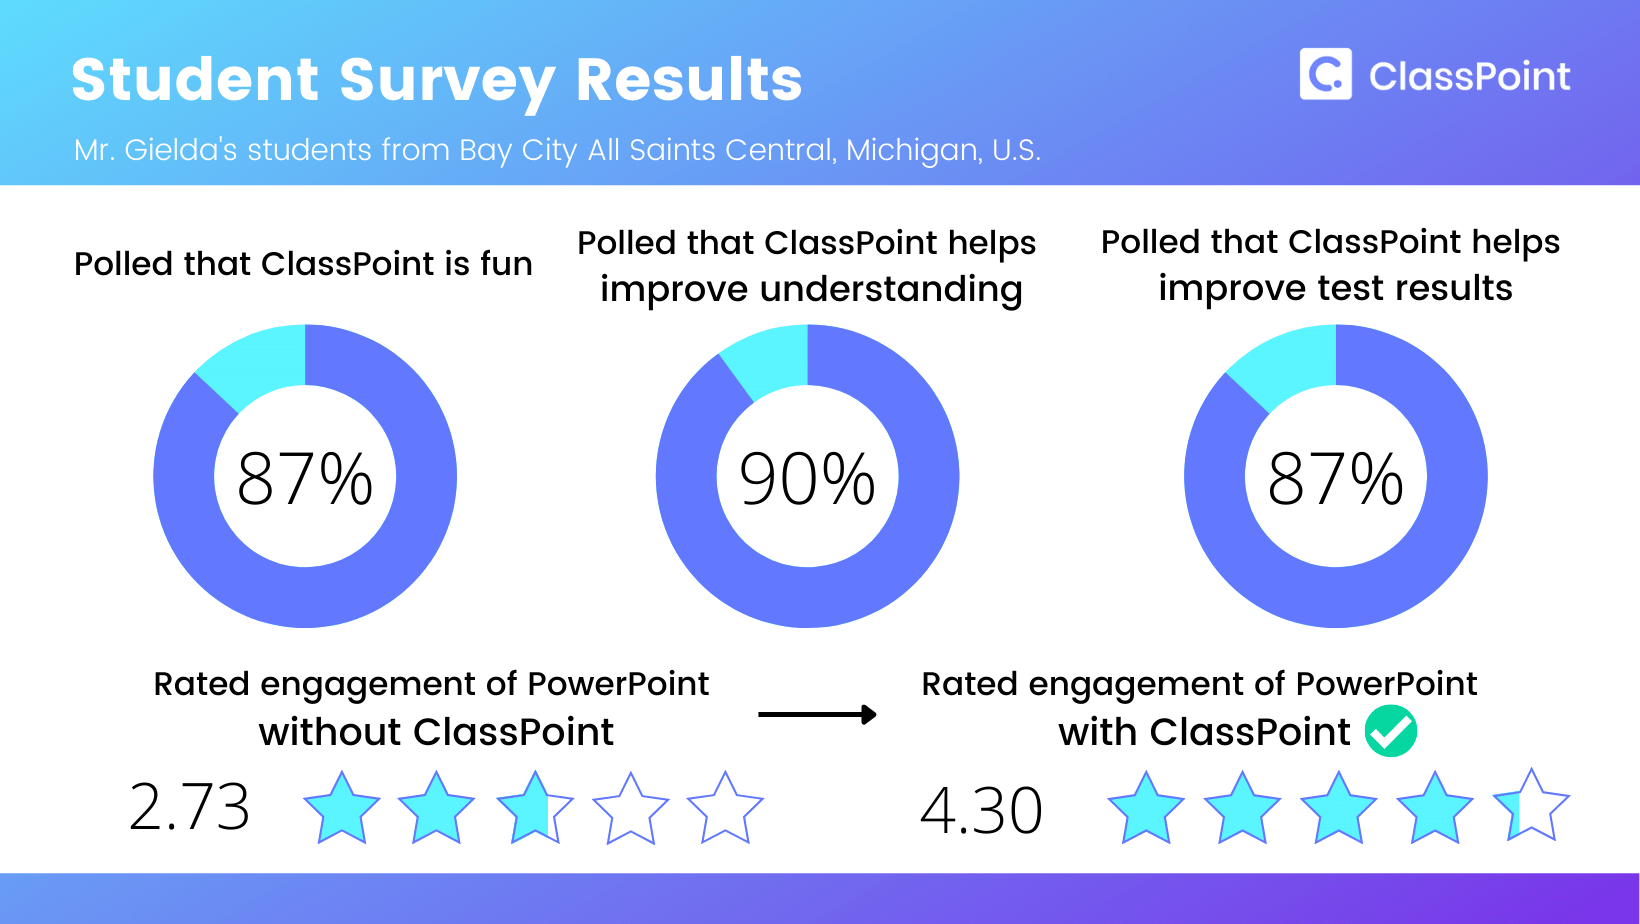 Resultados de la encuesta a estudiantes de un estudio de caso, Michigan, EE.UU.